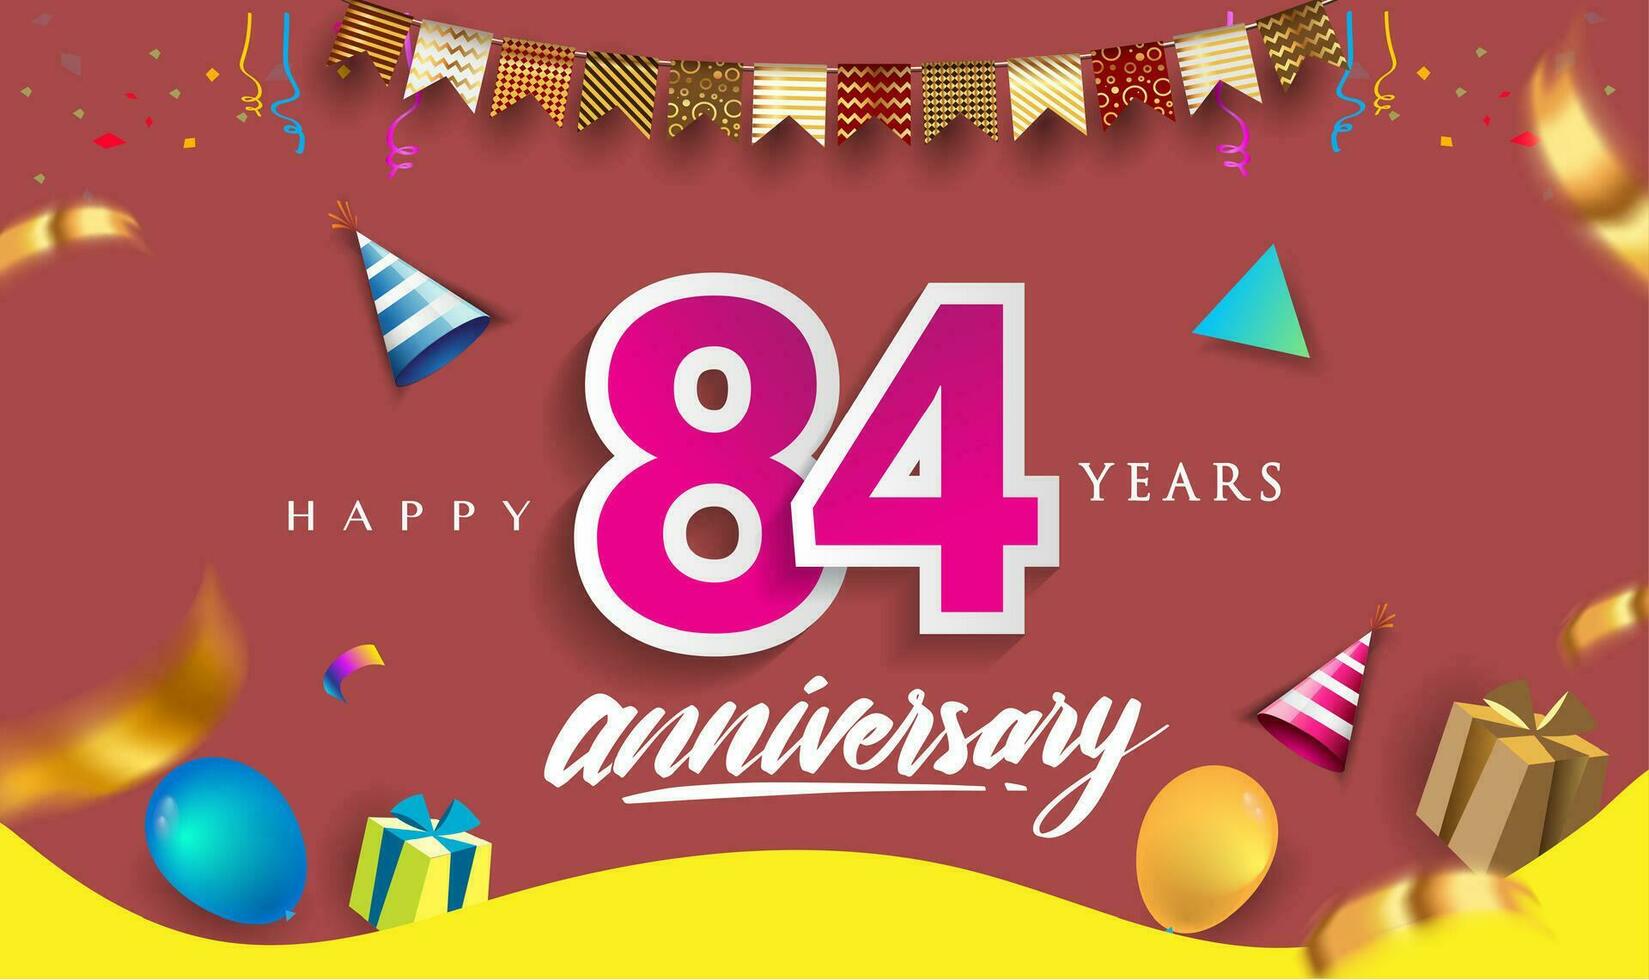 84: e år årsdag firande design, med gåva låda och ballonger, band, färgrik vektor mall element för din födelsedag fira fest.